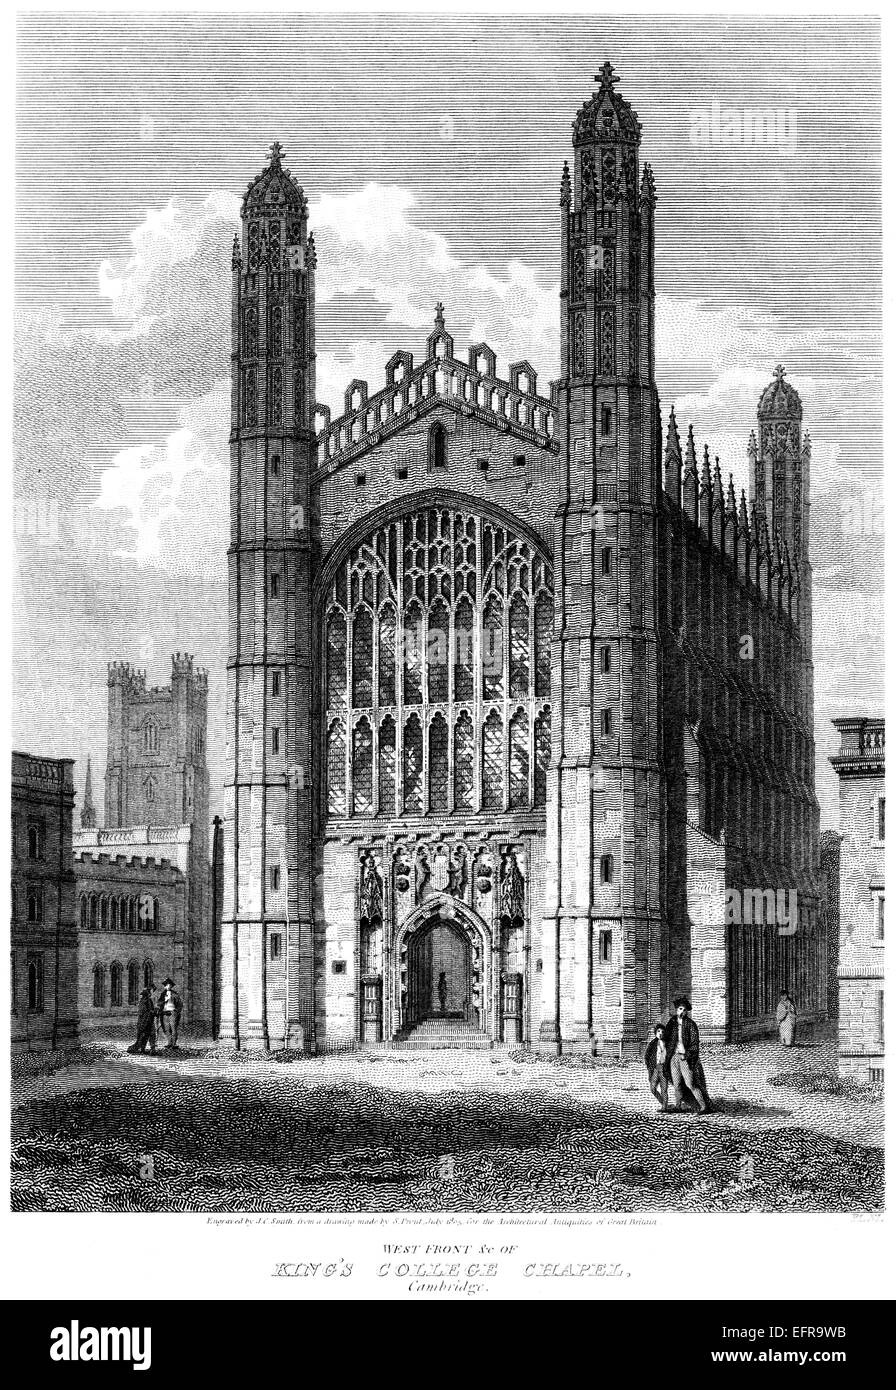 Un grabado de Occidente frente a la capilla de King's College, Cambridge escaneadas en alta resolución de una publicación impresa en 1805. Foto de stock